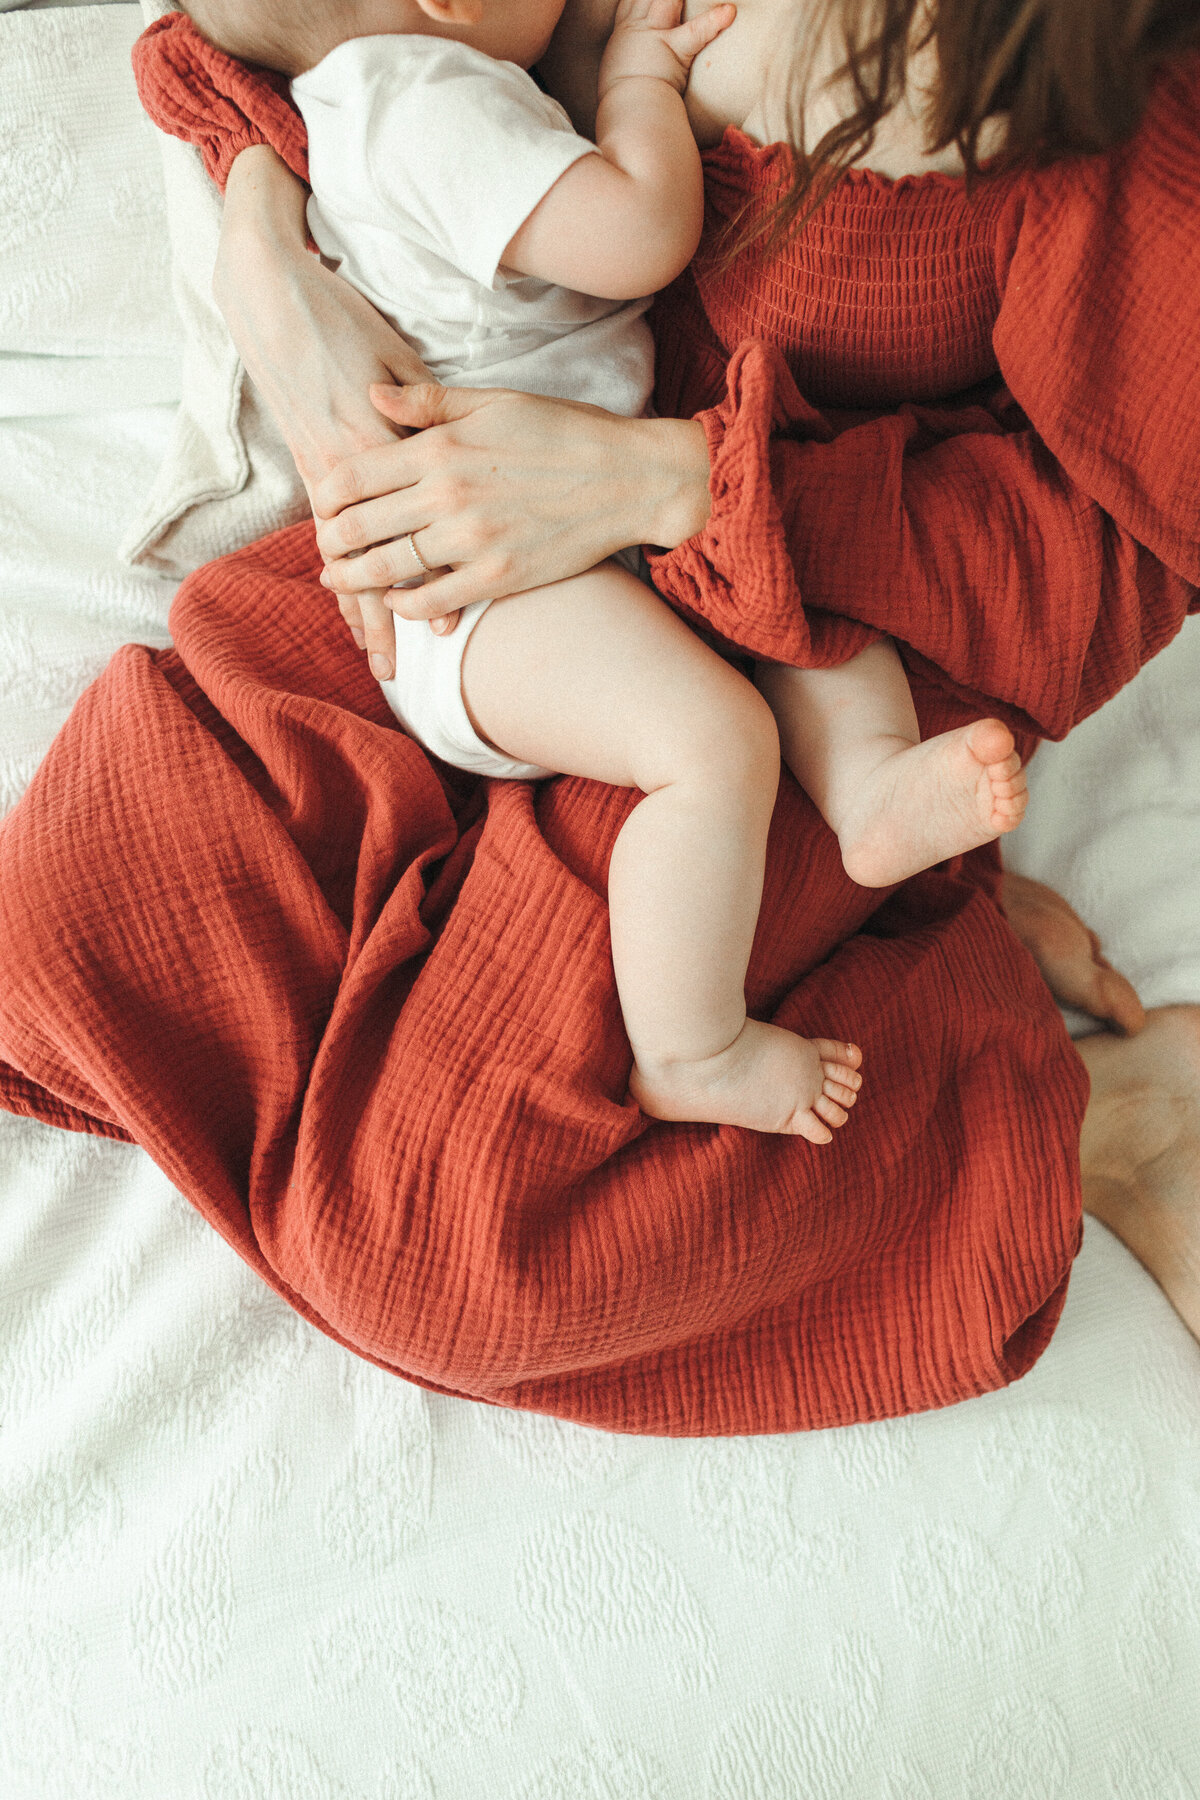 calgary-breastfeeding-session-ivaniaberubephoto-6